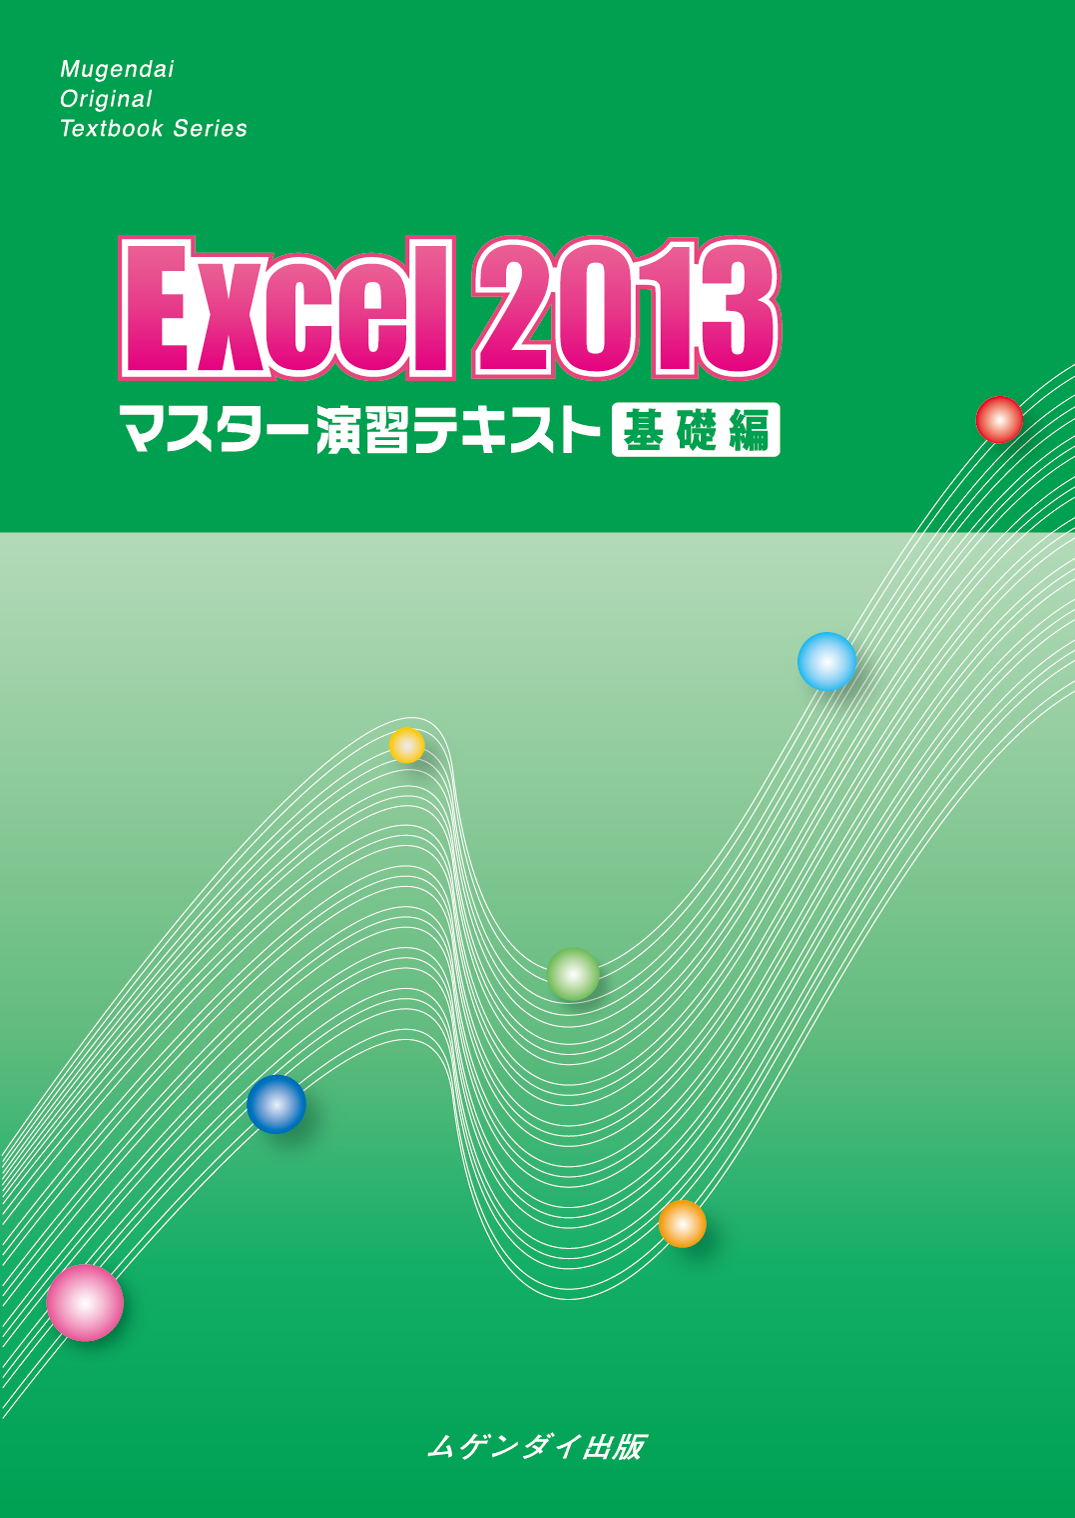 Excel 2013 }X^[KeLXg@b